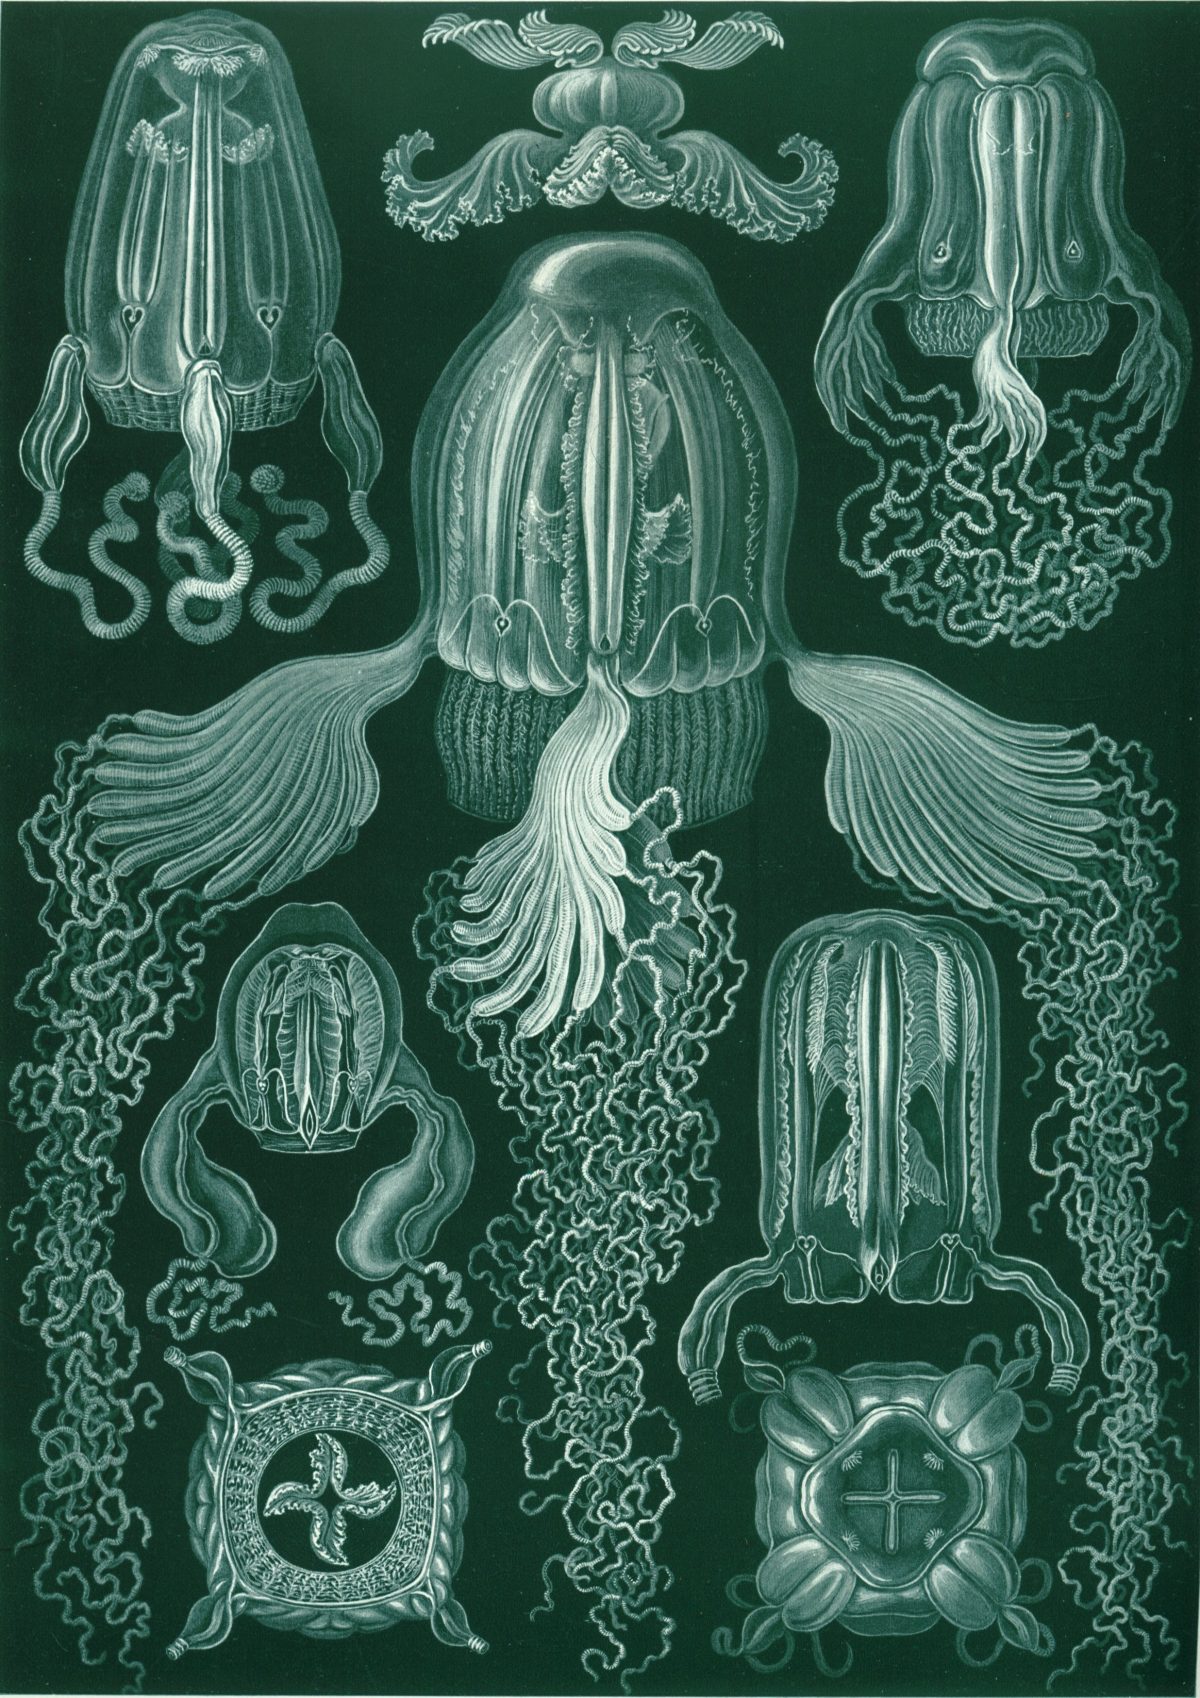 Ernst Haeckel - Kunstformen der Natur (1904), plate 78: Cubomedusae 